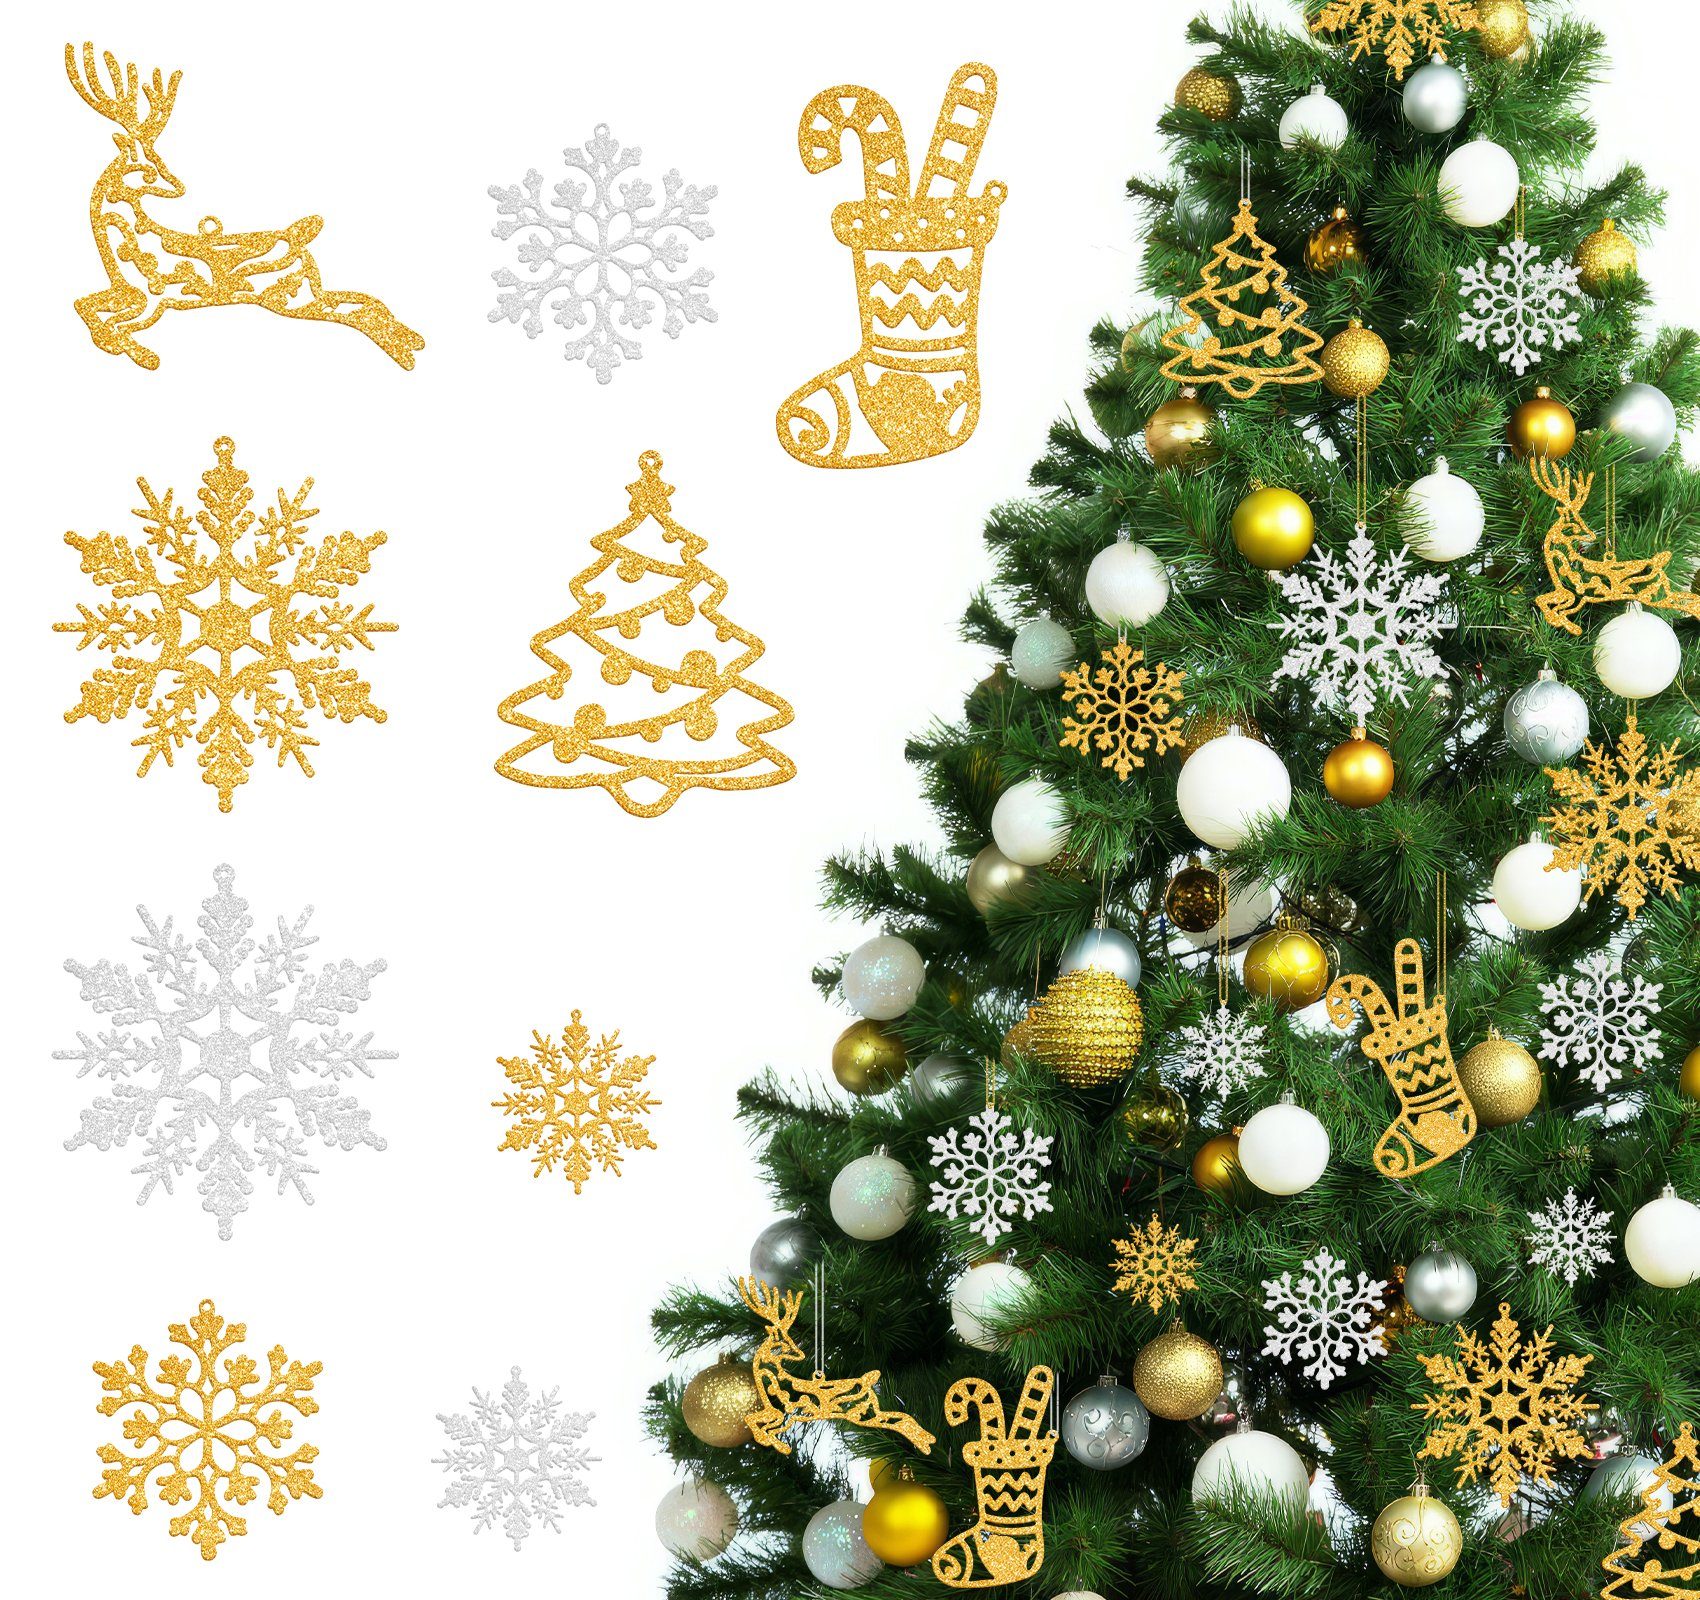 Homewit Weihnachtsbaumdecke Stück christbaumschmuck Gold-Weiß deko schneeflocken schneeflocken 65